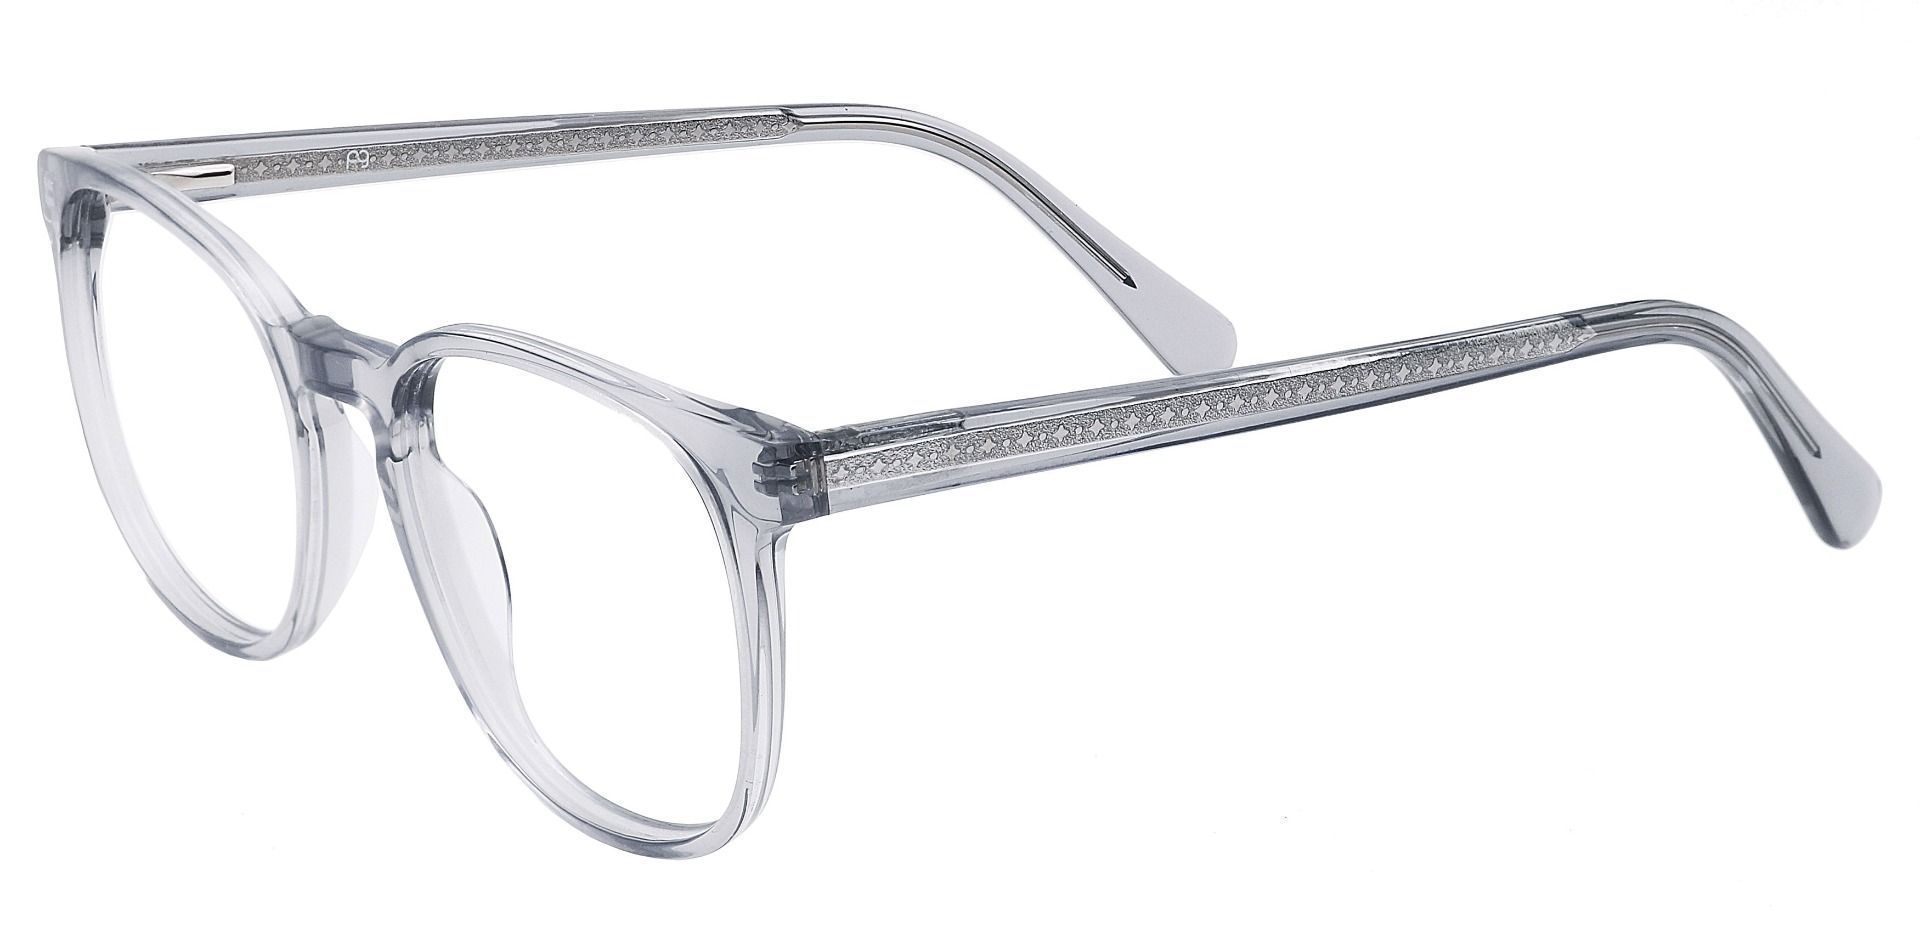 Nebula Round Eyeglasses Frame - Gray